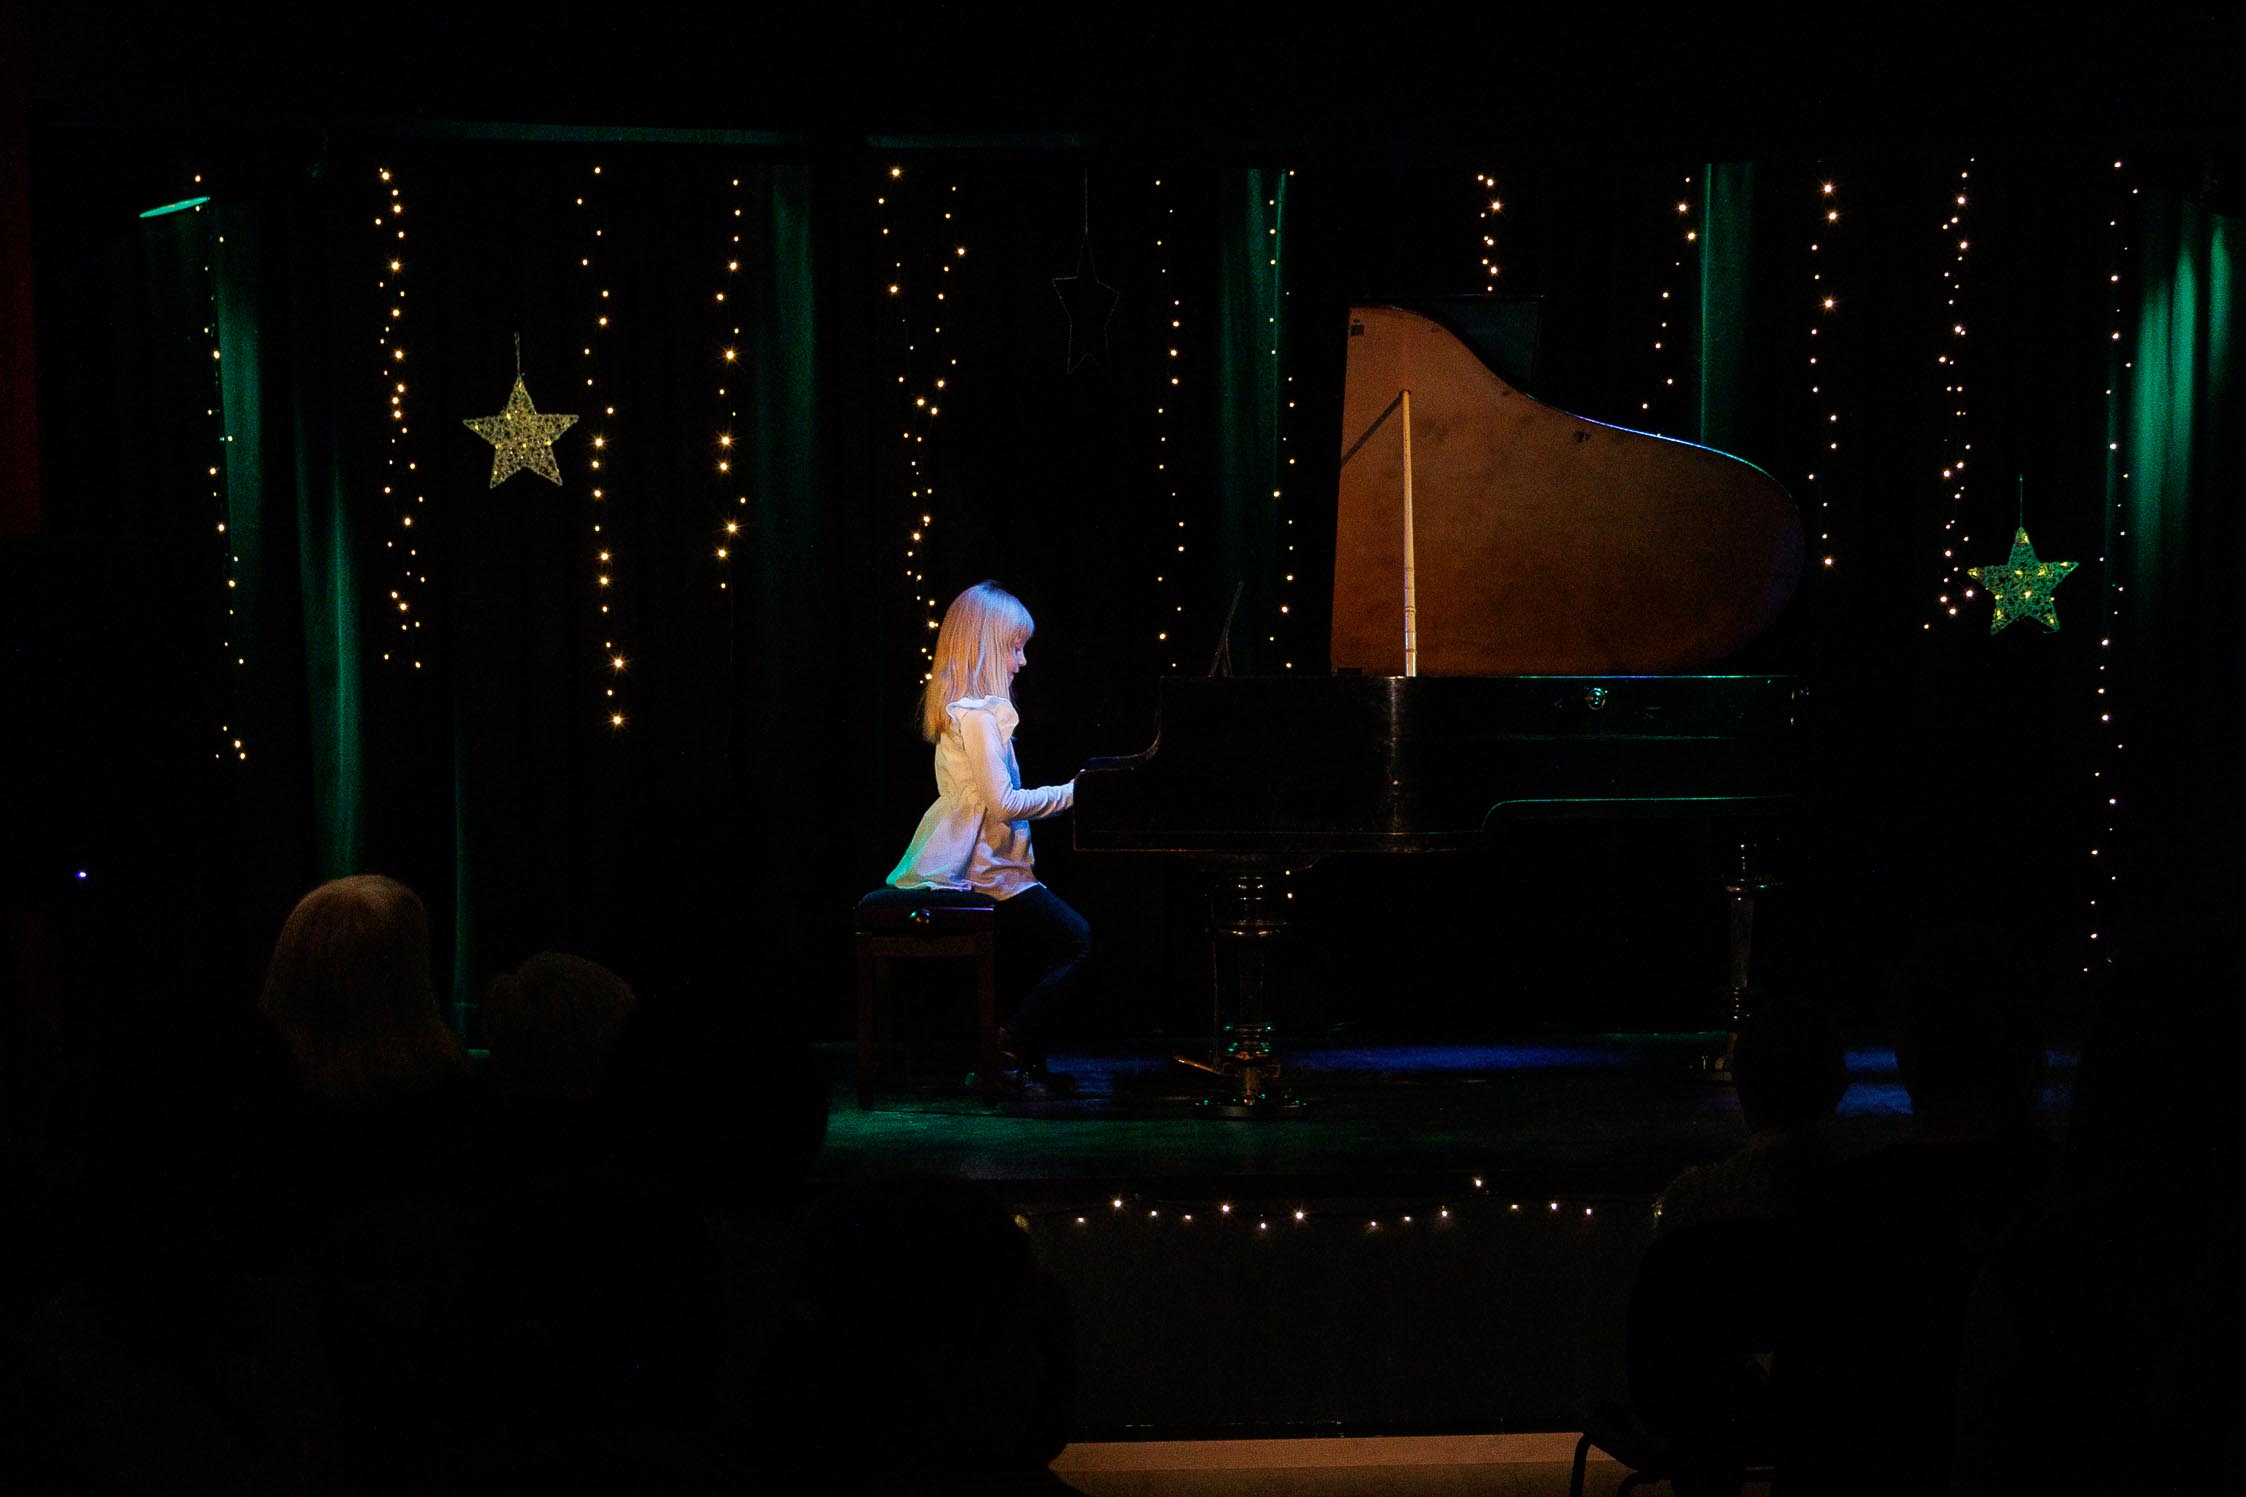 scena, fortepian, mała dziewczynka gra na fortepianie, ma ładną jasna sukienkę, włosy ładnie zaczesane, blondynka. Gra w wielkim skupieniu.